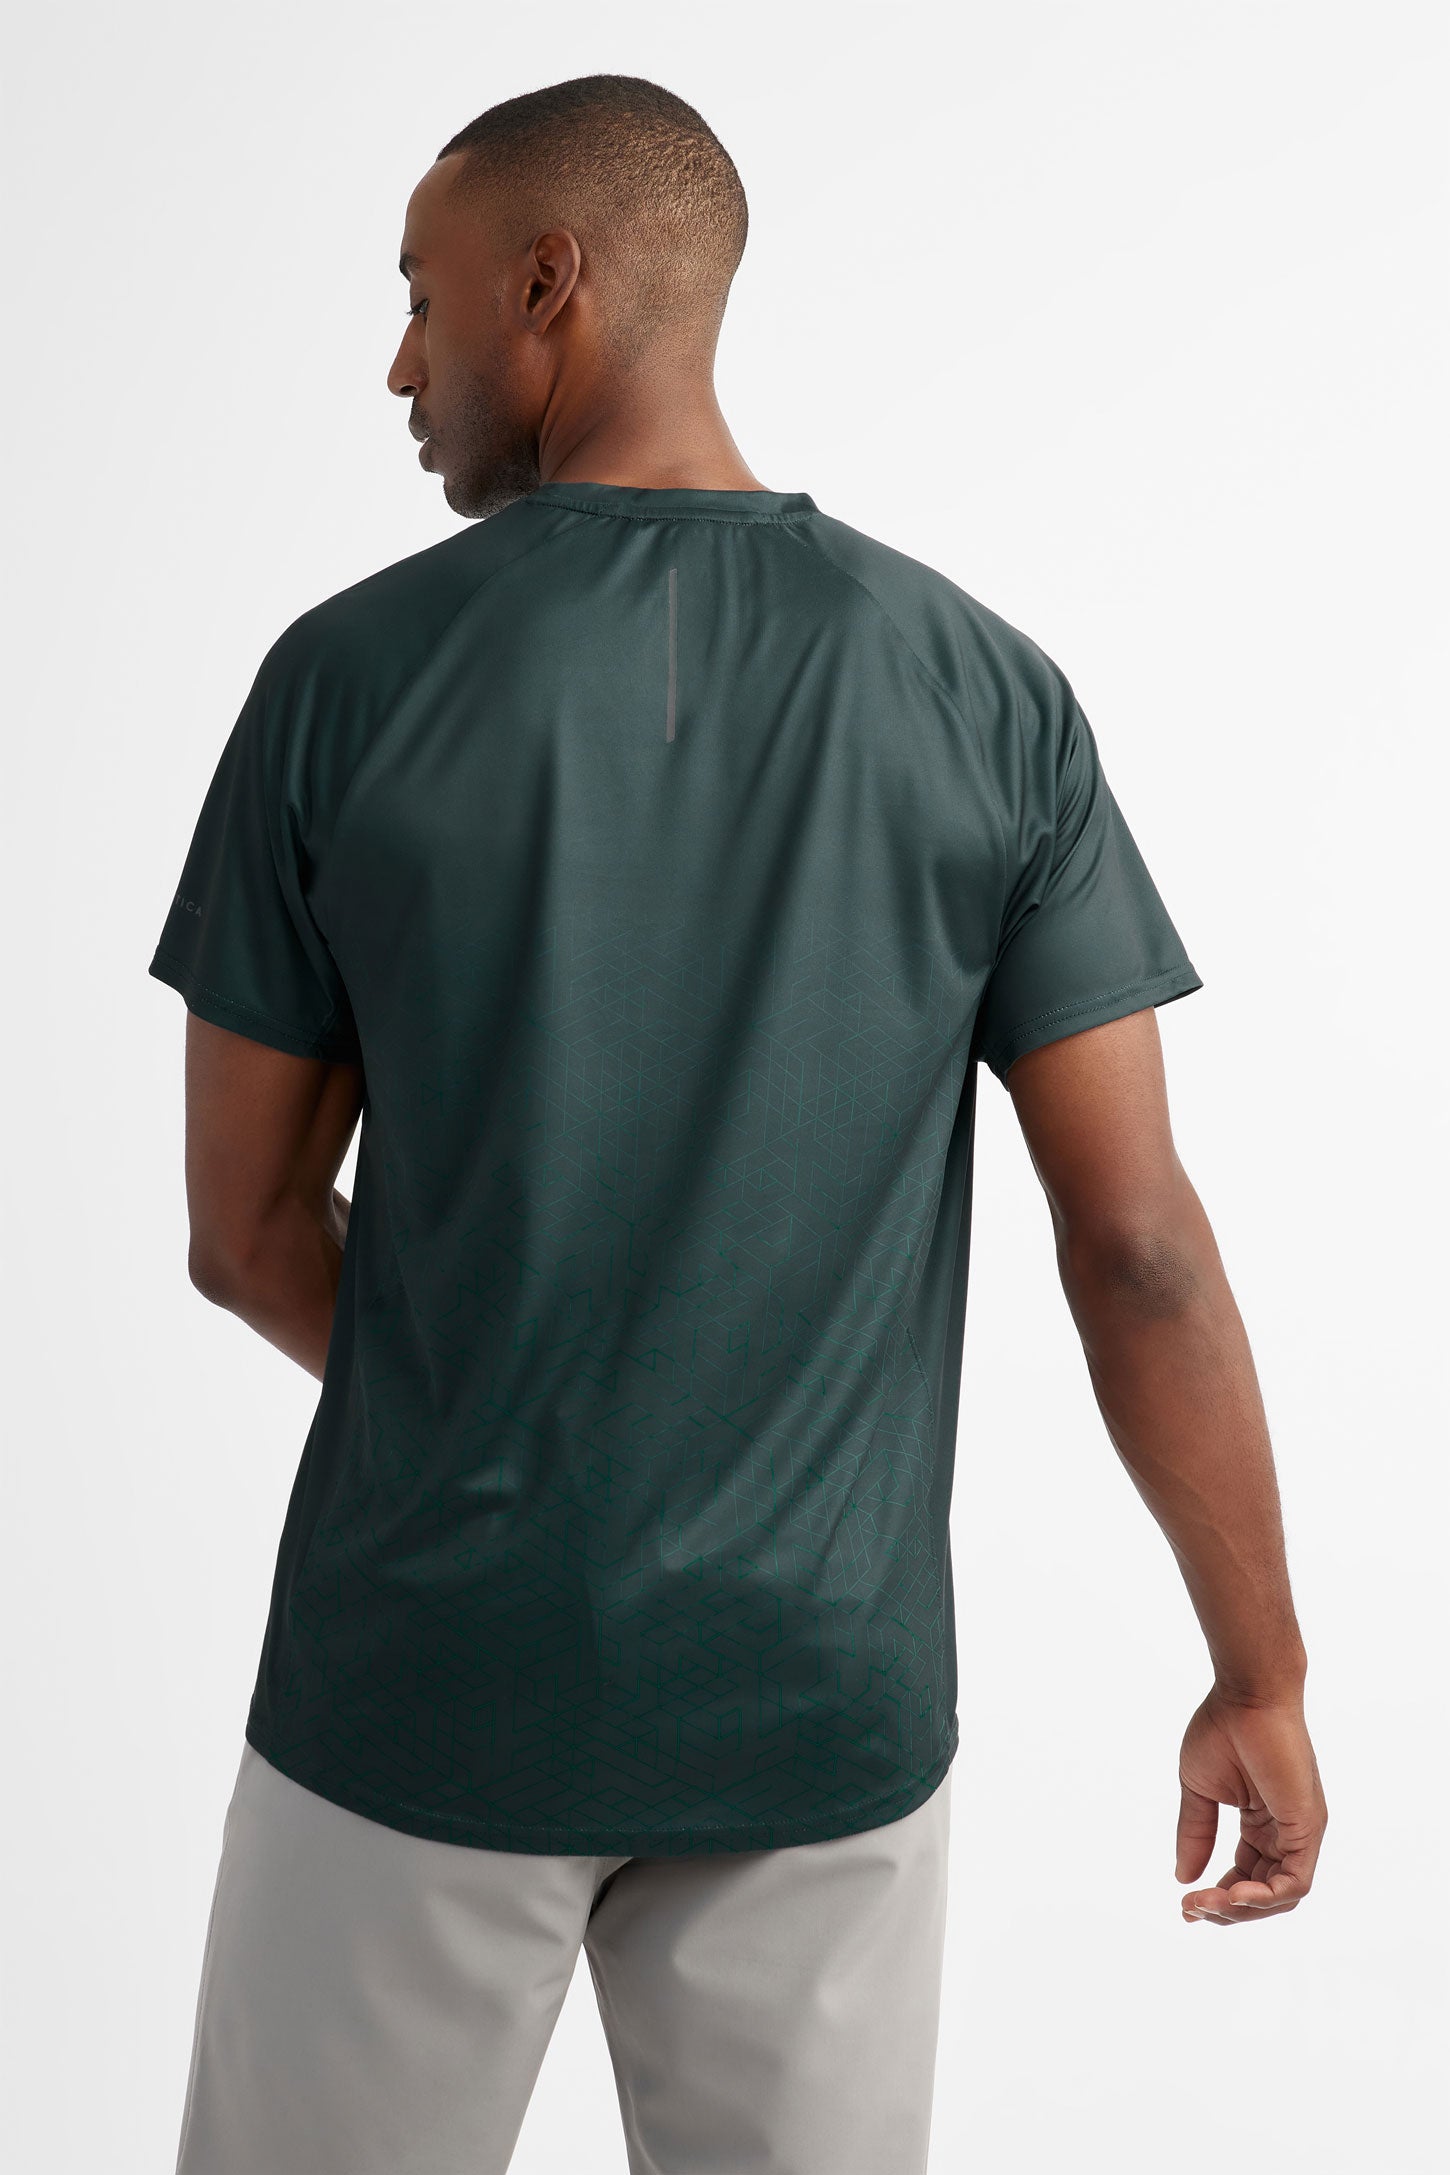 T-shirt athlétique - Homme && VERT FONCE